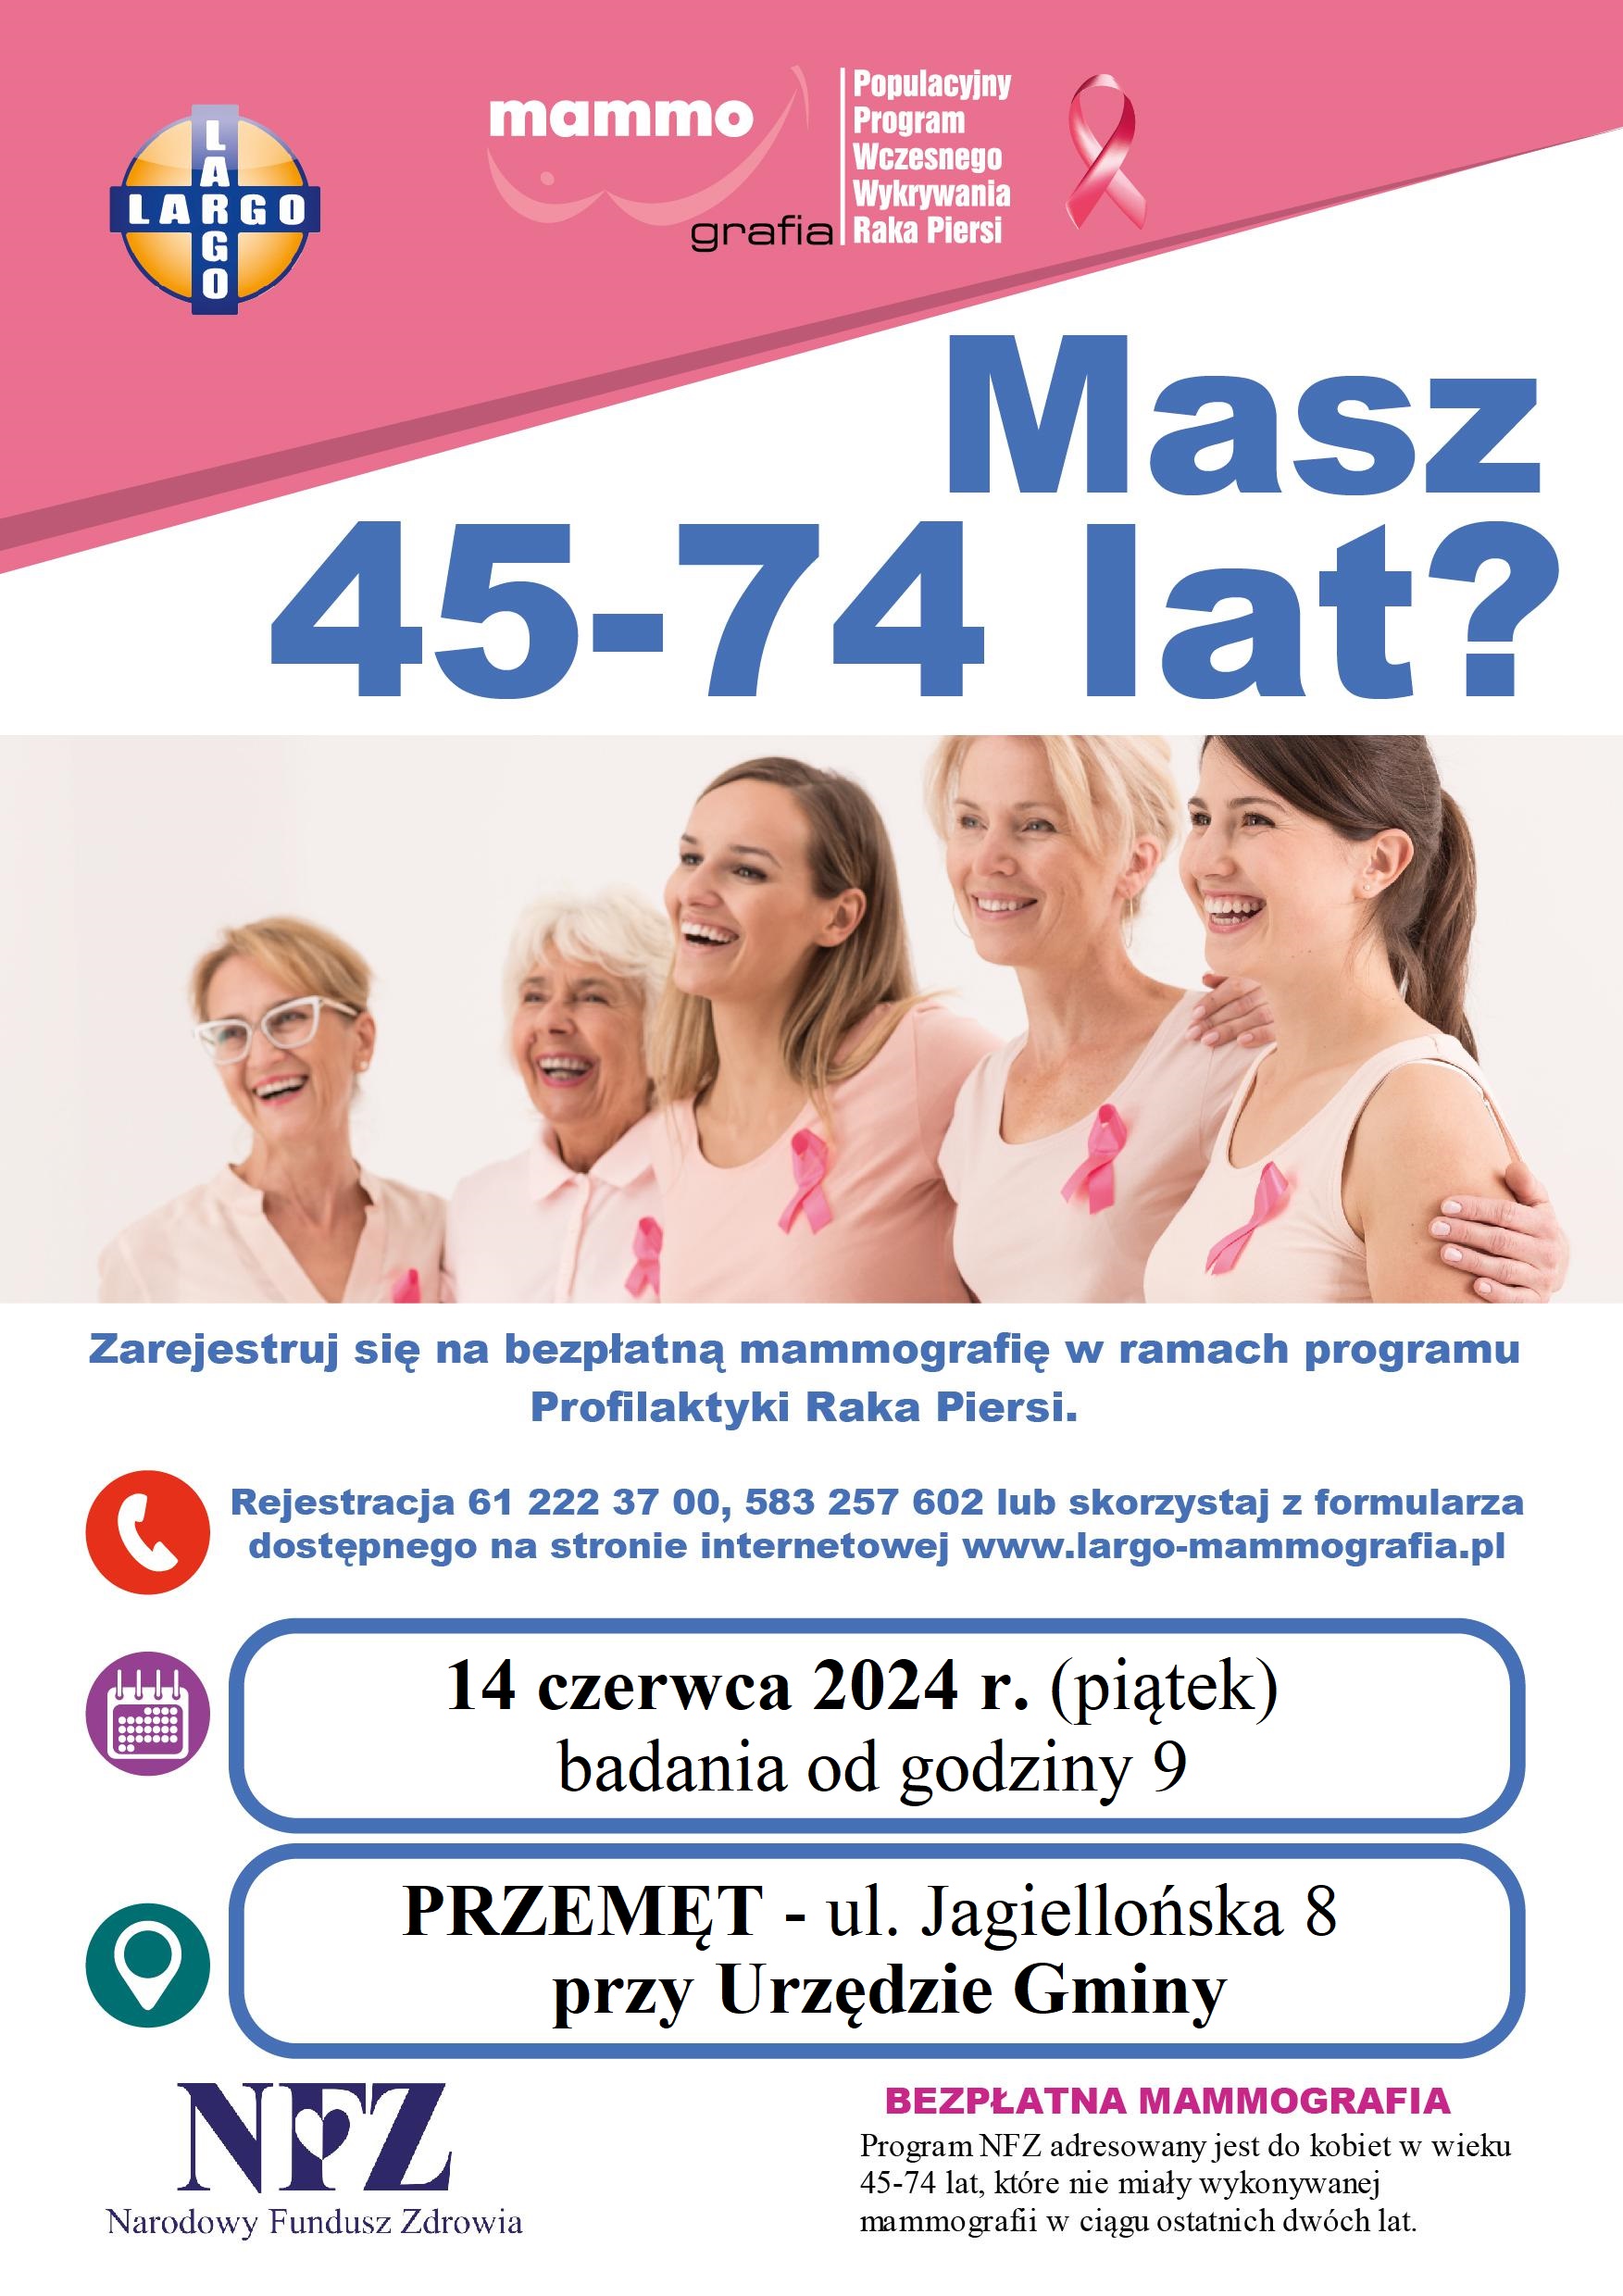 Plakat informujący o możliwości zarejestrowania się na bezpłatną mammografię w ramach programu Profilaktyki Raka Piersi. Plakat zawiera zdjęcie kobiet w różnym wieku. Dodatkowo zawiera informacje: "Masz 45-74 lat? Zarejestruj się na bezpłatną mammografię w ramach programu Profilaktyki Raka Piersi. Rejestracja 61 222 37 00, 583 257 602 lub skorzystaj z formularza dostępnego na stronie internetowej www.largo-mammografia.pl 14 czerwca 2024 r. (piątek) badania od godziny 9 w miejscowości PRZEMĘT - ul. Jagiellońska 8 przy Urzędzie Gminy. NFZ Narodowy Fundusz Zdrowia BEZPŁATNA MAMMOGRAFIA Program NFZ adresowany jest do kobiet w wieku 45-74 lat, które nie miały wykonywanej mammografii w ciągu ostatnich dwóch lat.